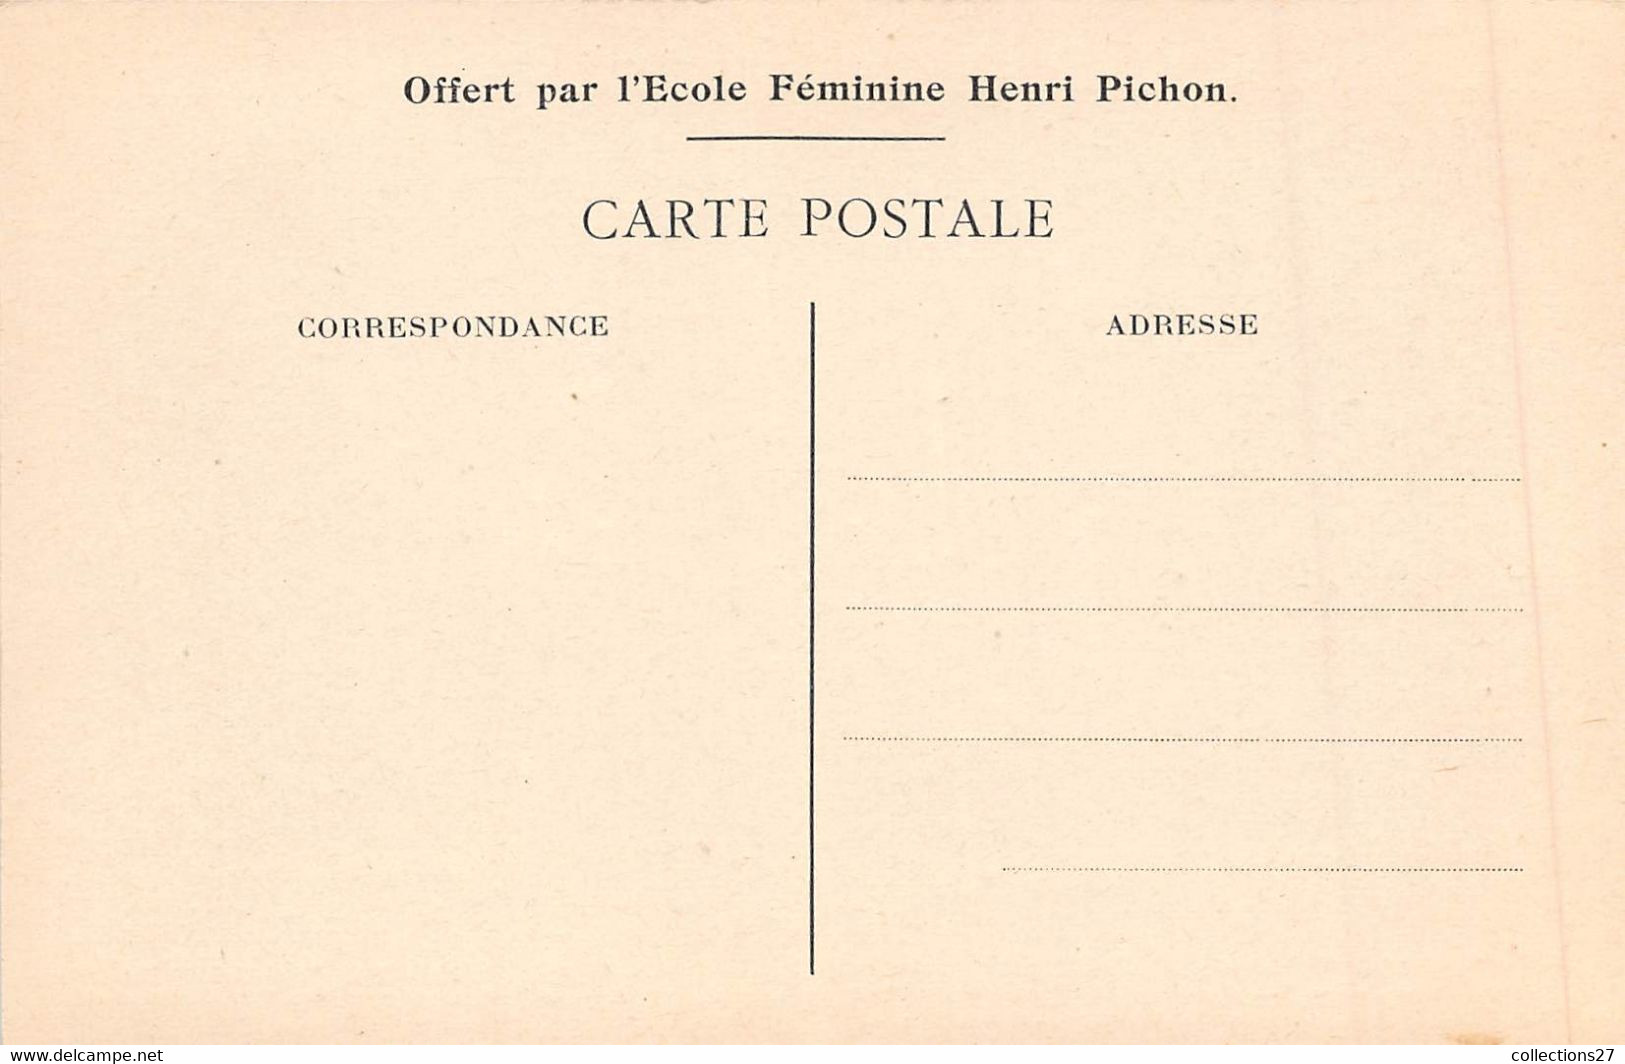 PARIS-75001-136 RUE DE RIVOLI- CARTES OFFERT PAR L'ECOLE HENRI PICHON - CARNET CALENDRIER 1915/1916 DE 4 CARTES